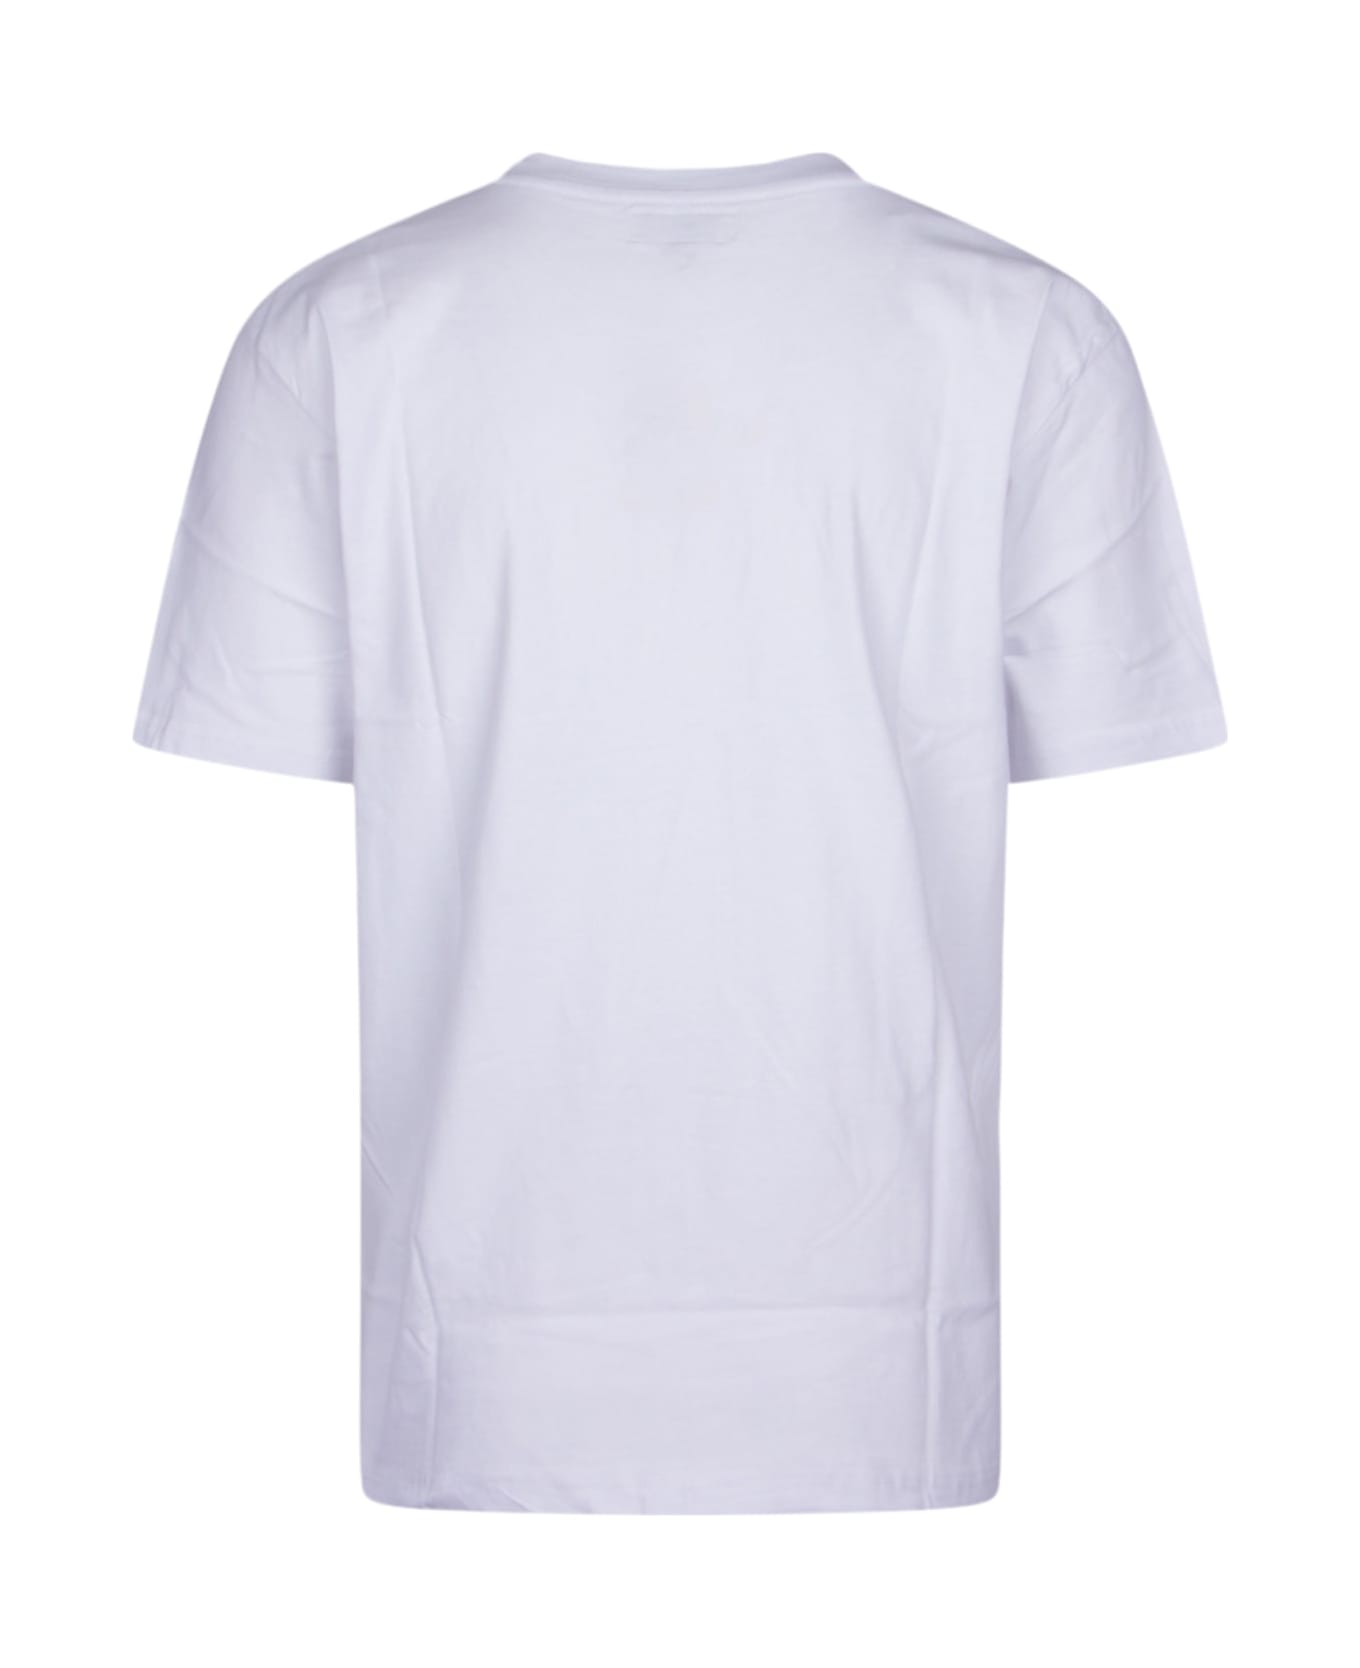 Market T-shirt - WHITE シャツ